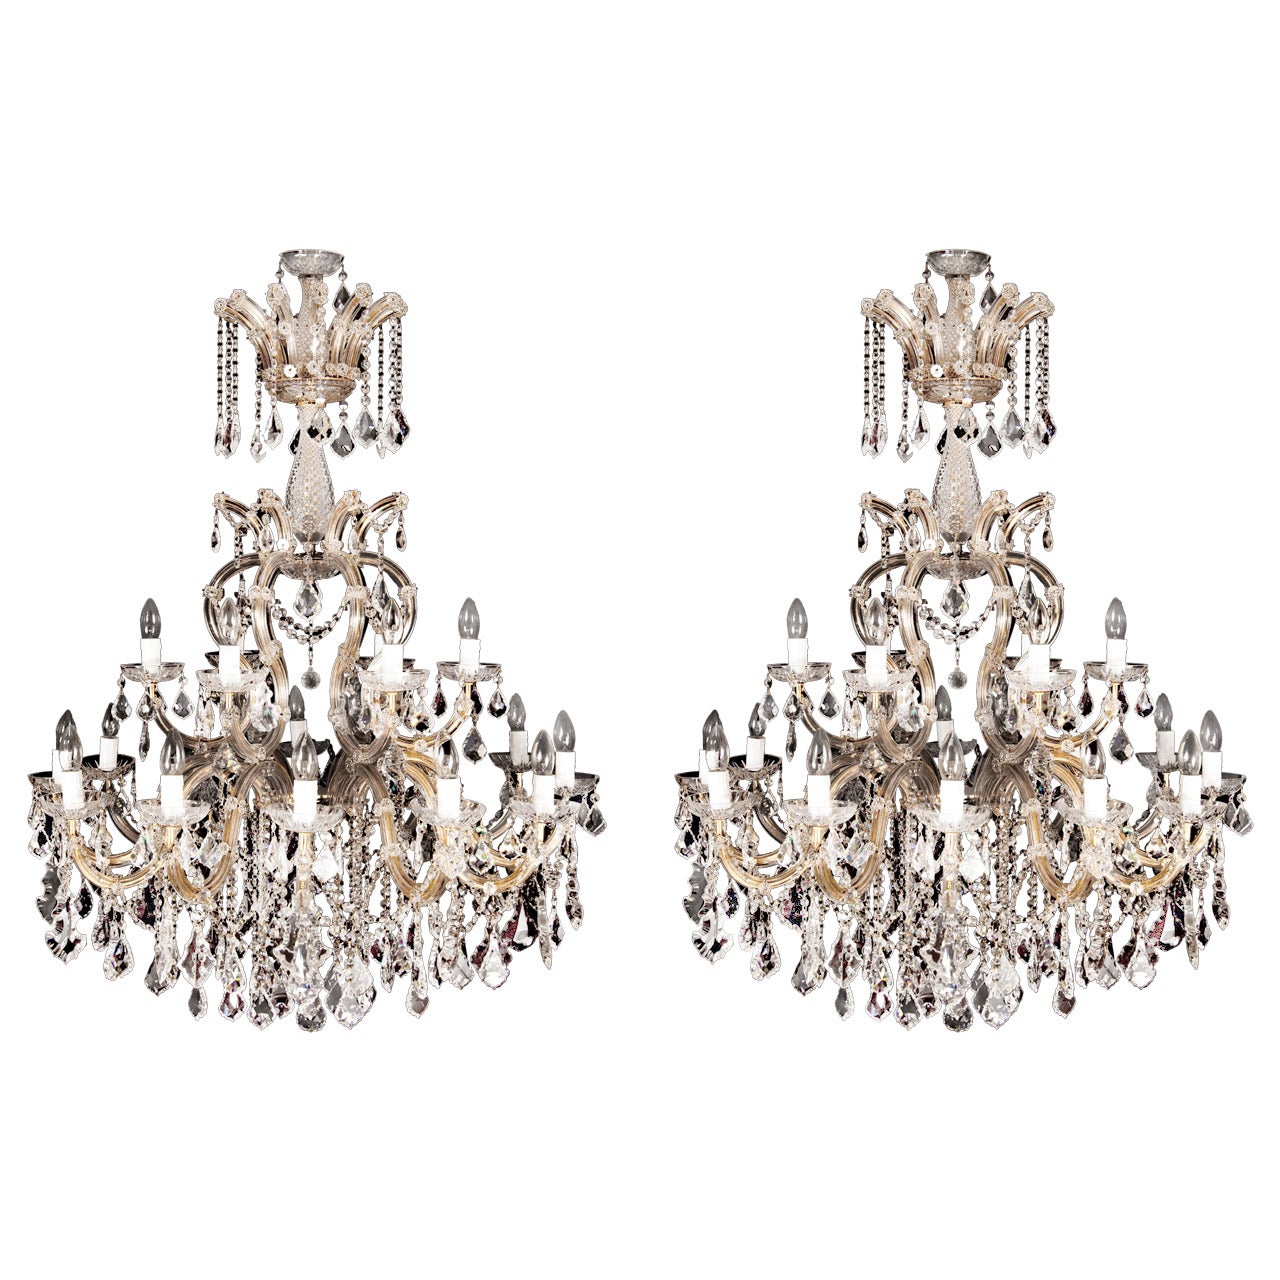 Pair of Bohemians cut glass and gilt bronze Belle Époque style chandeliers